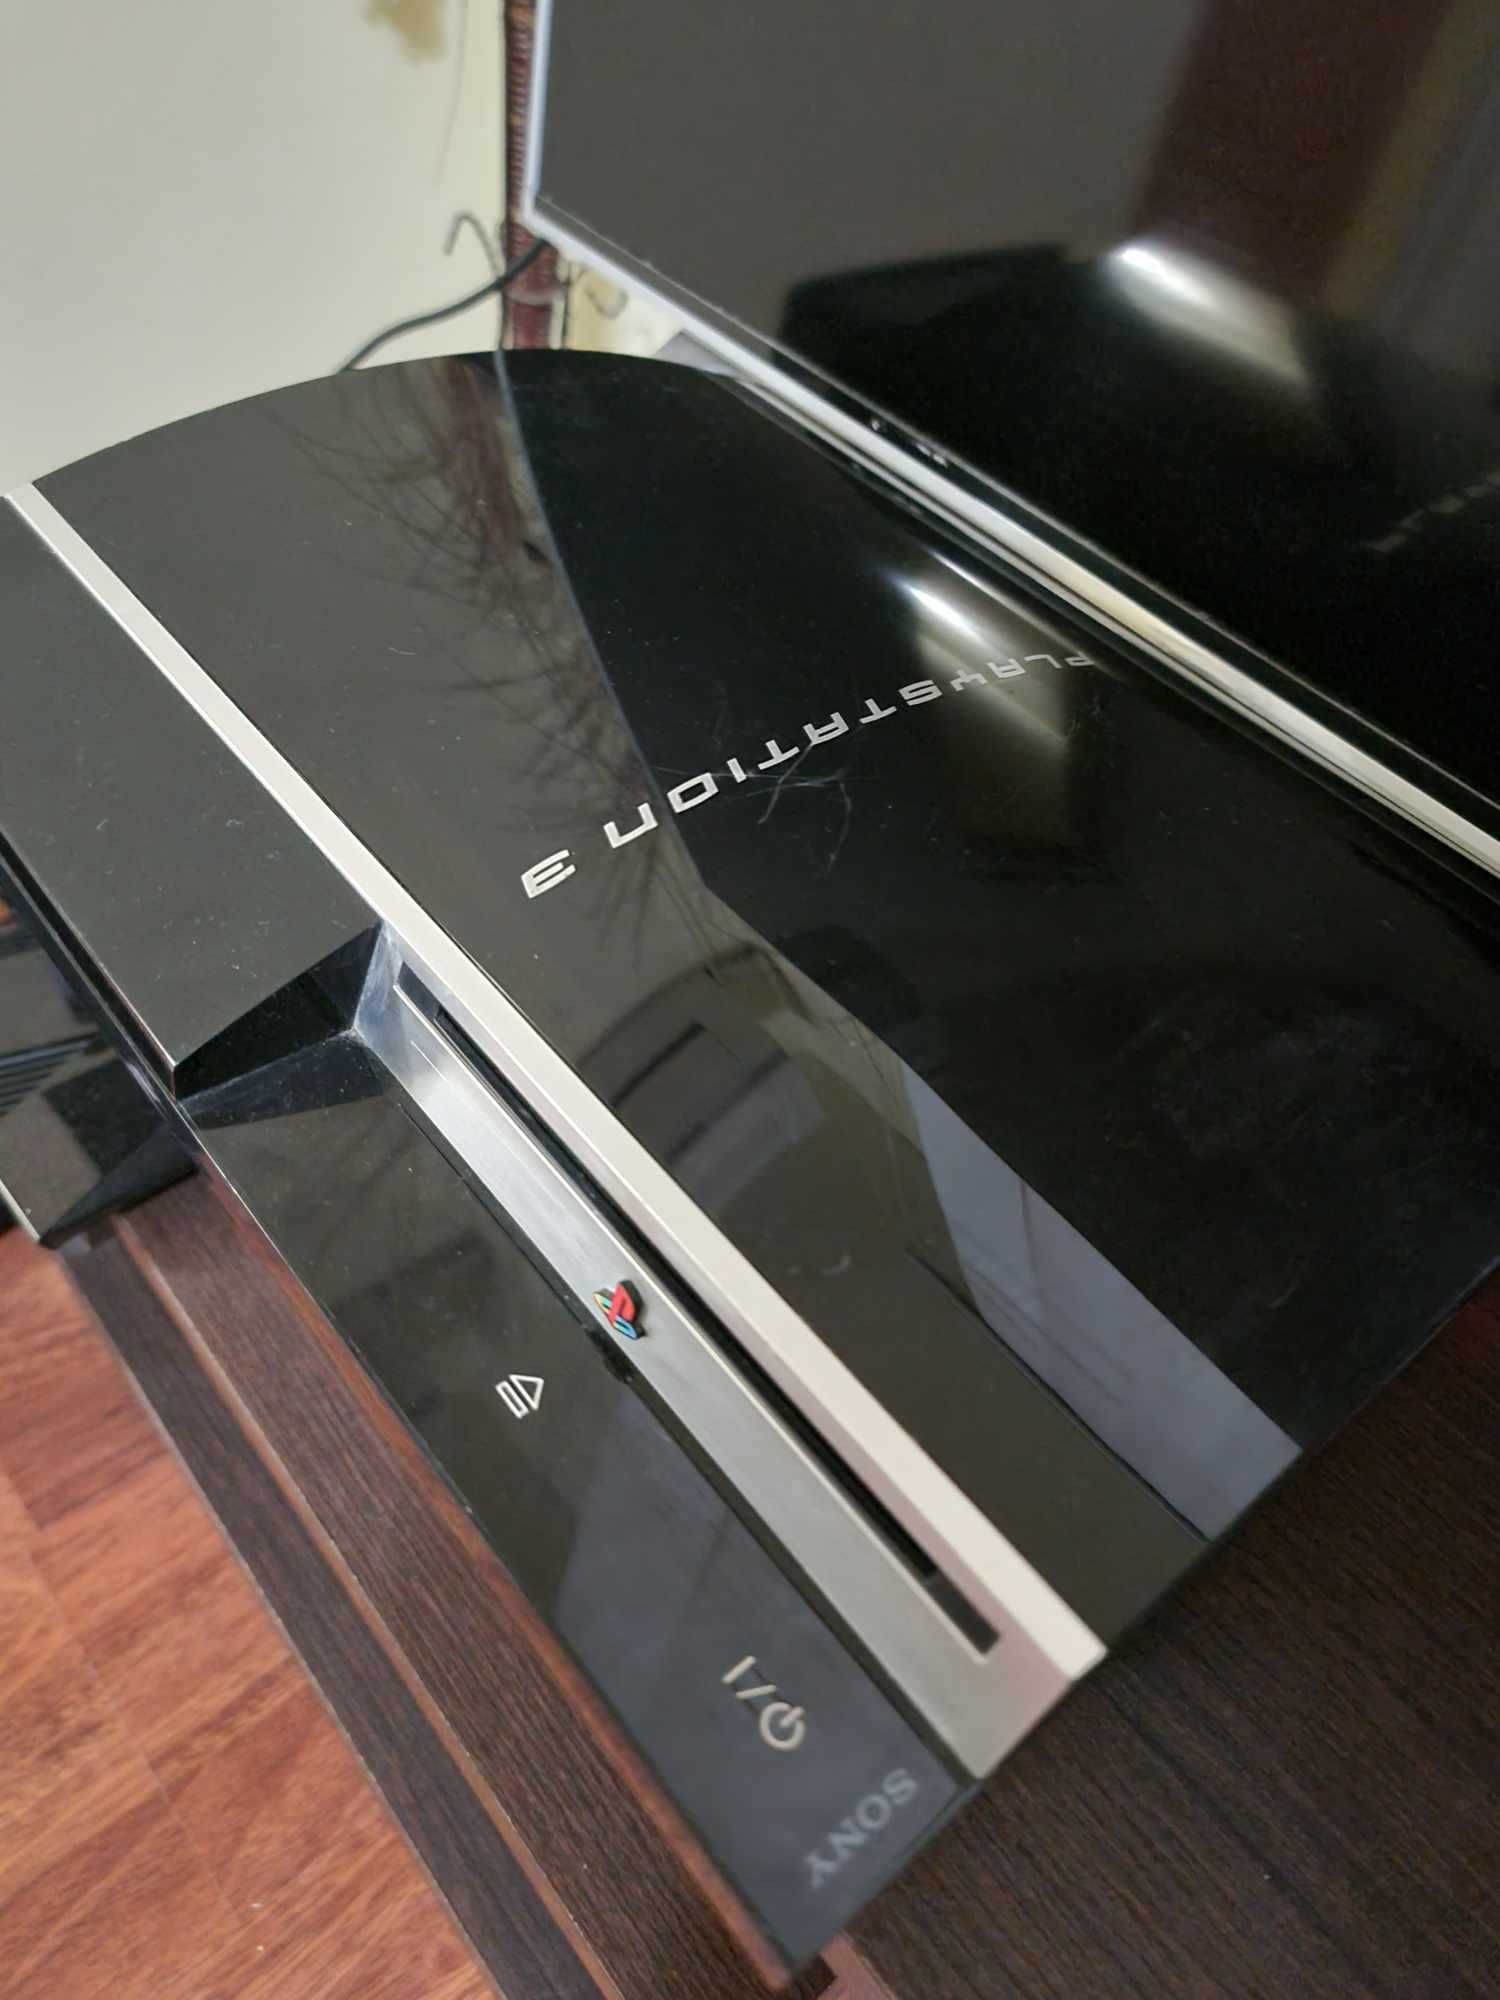 Consola Playstation 3 Ps3 phat